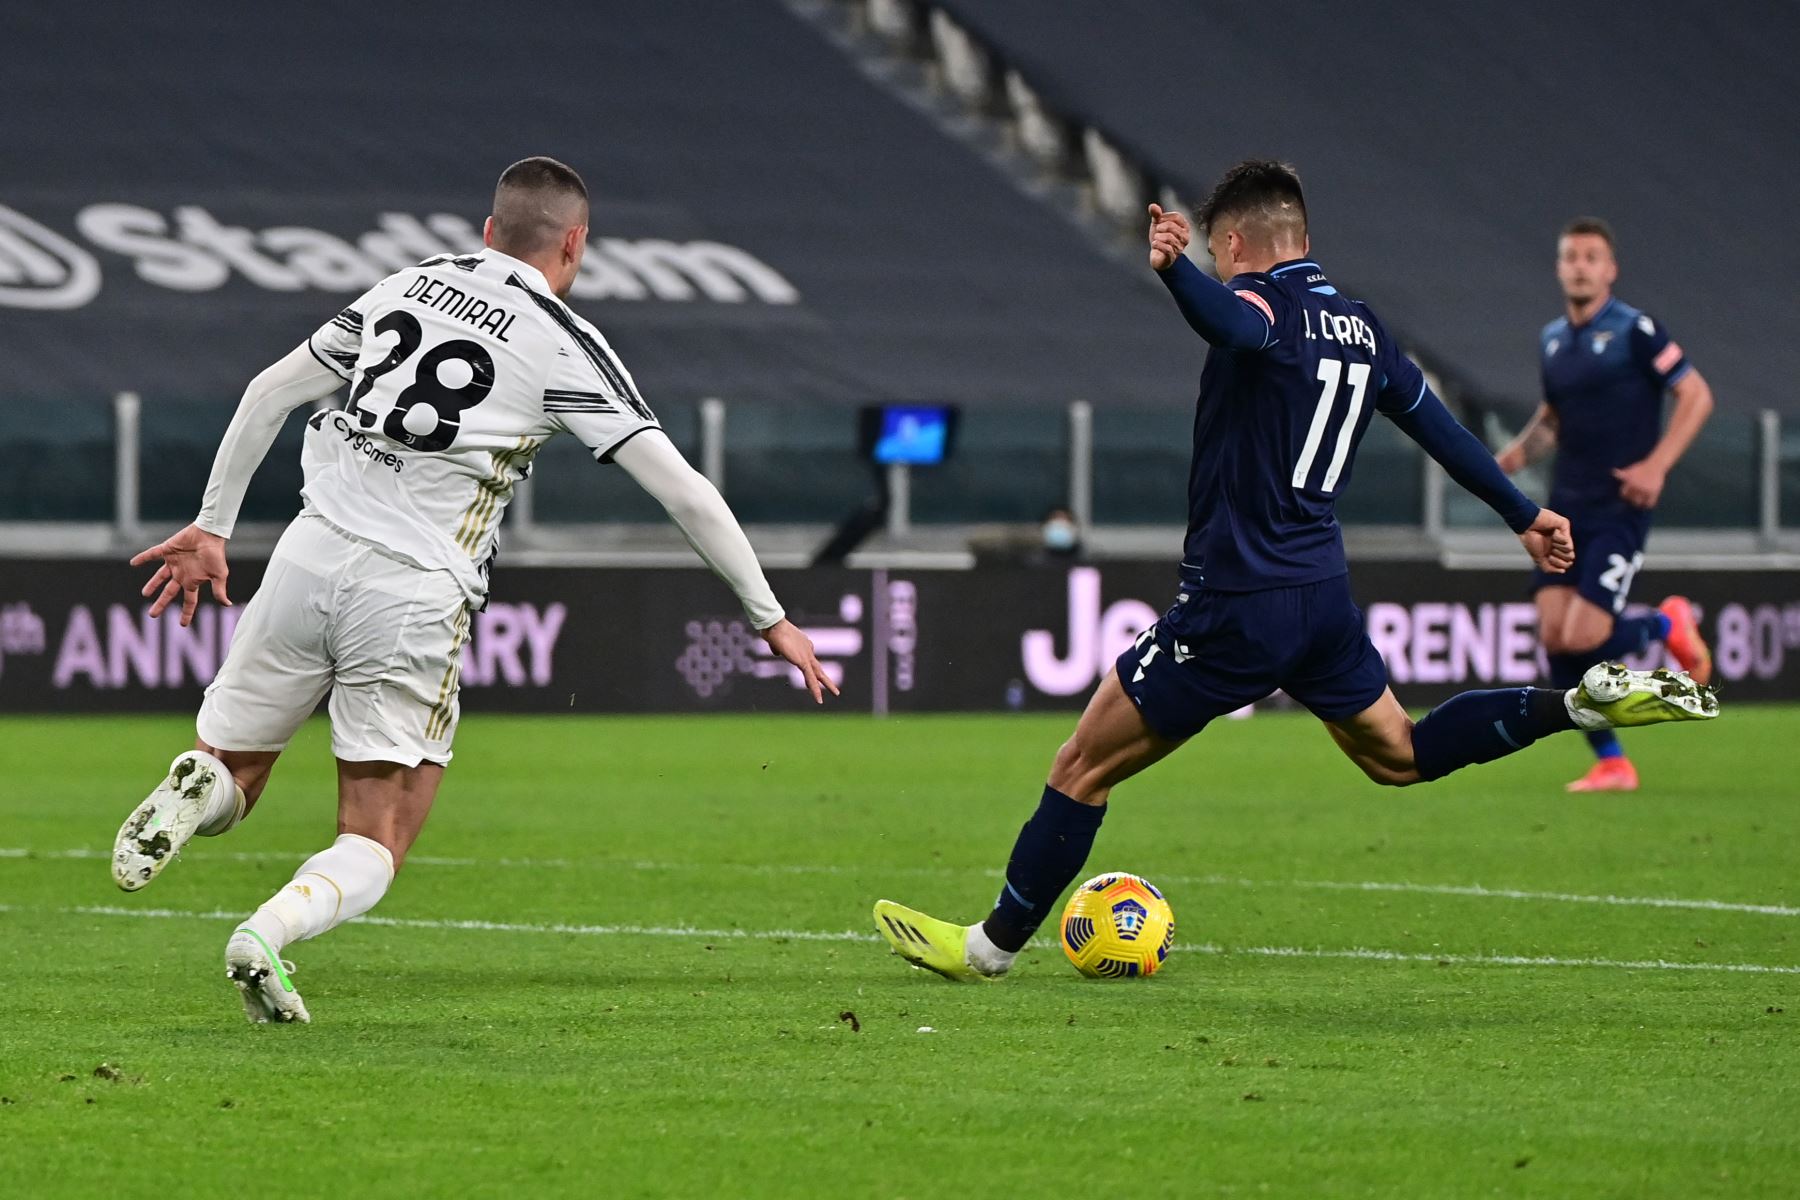 El delantero argentino de Lazio Joaquín Correa patea el balón y marca el primer gol de su equipo durante el partido de fútbol de la Serie A italiana entre la Juventus y Lazio en el estadio de la Juventus en Turín, en el norte de Italia. Foto: AFP